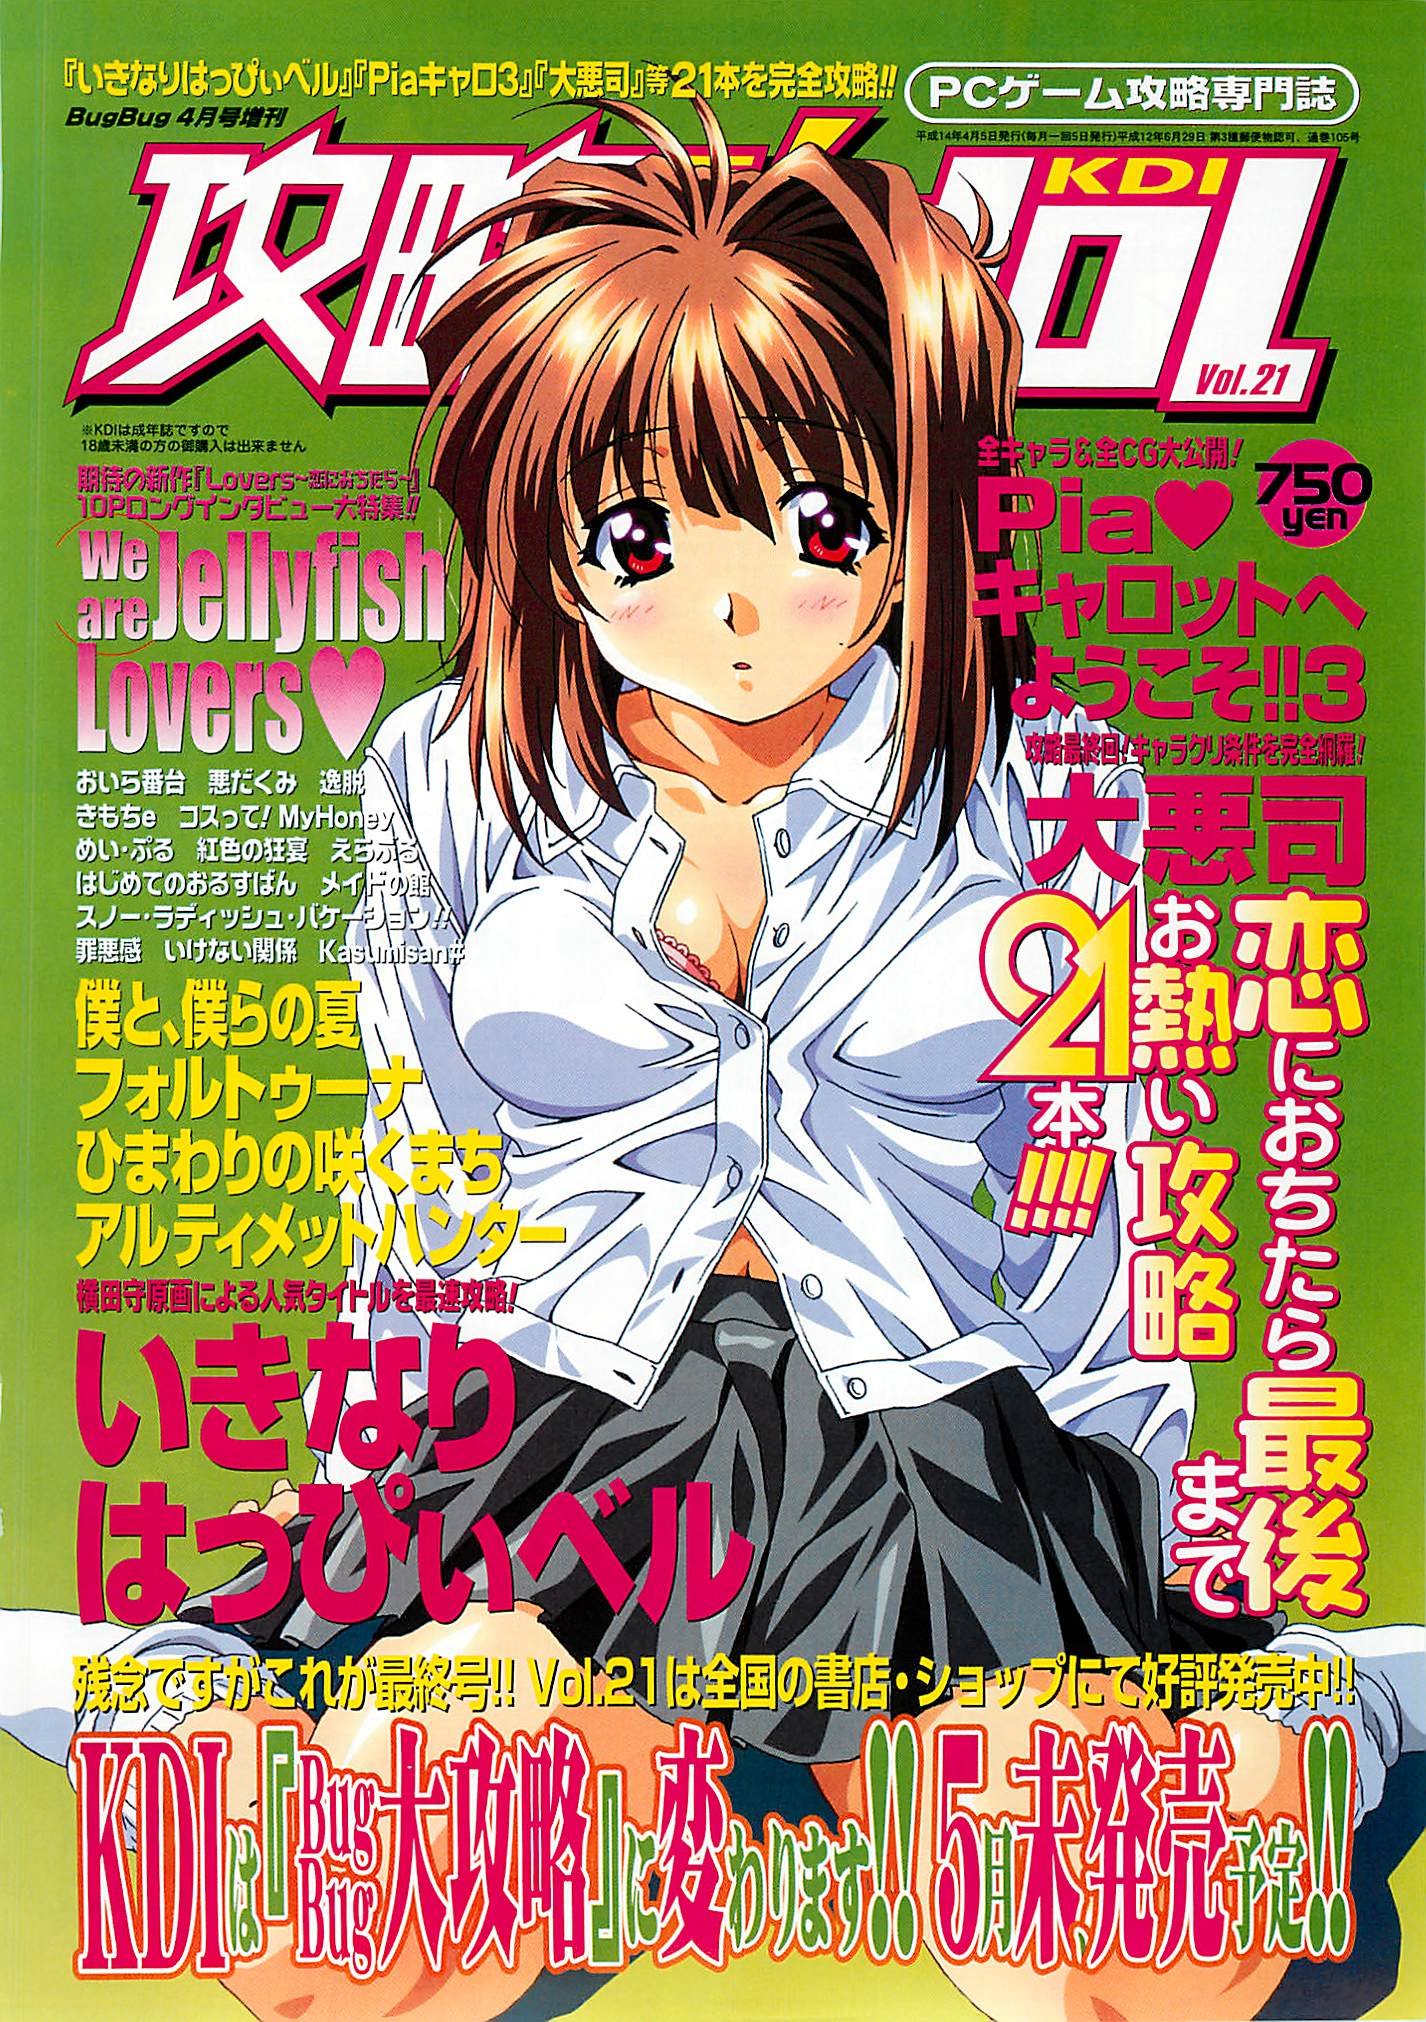 Kouryaku Dennou idol Vol.21 (April 2002) ad